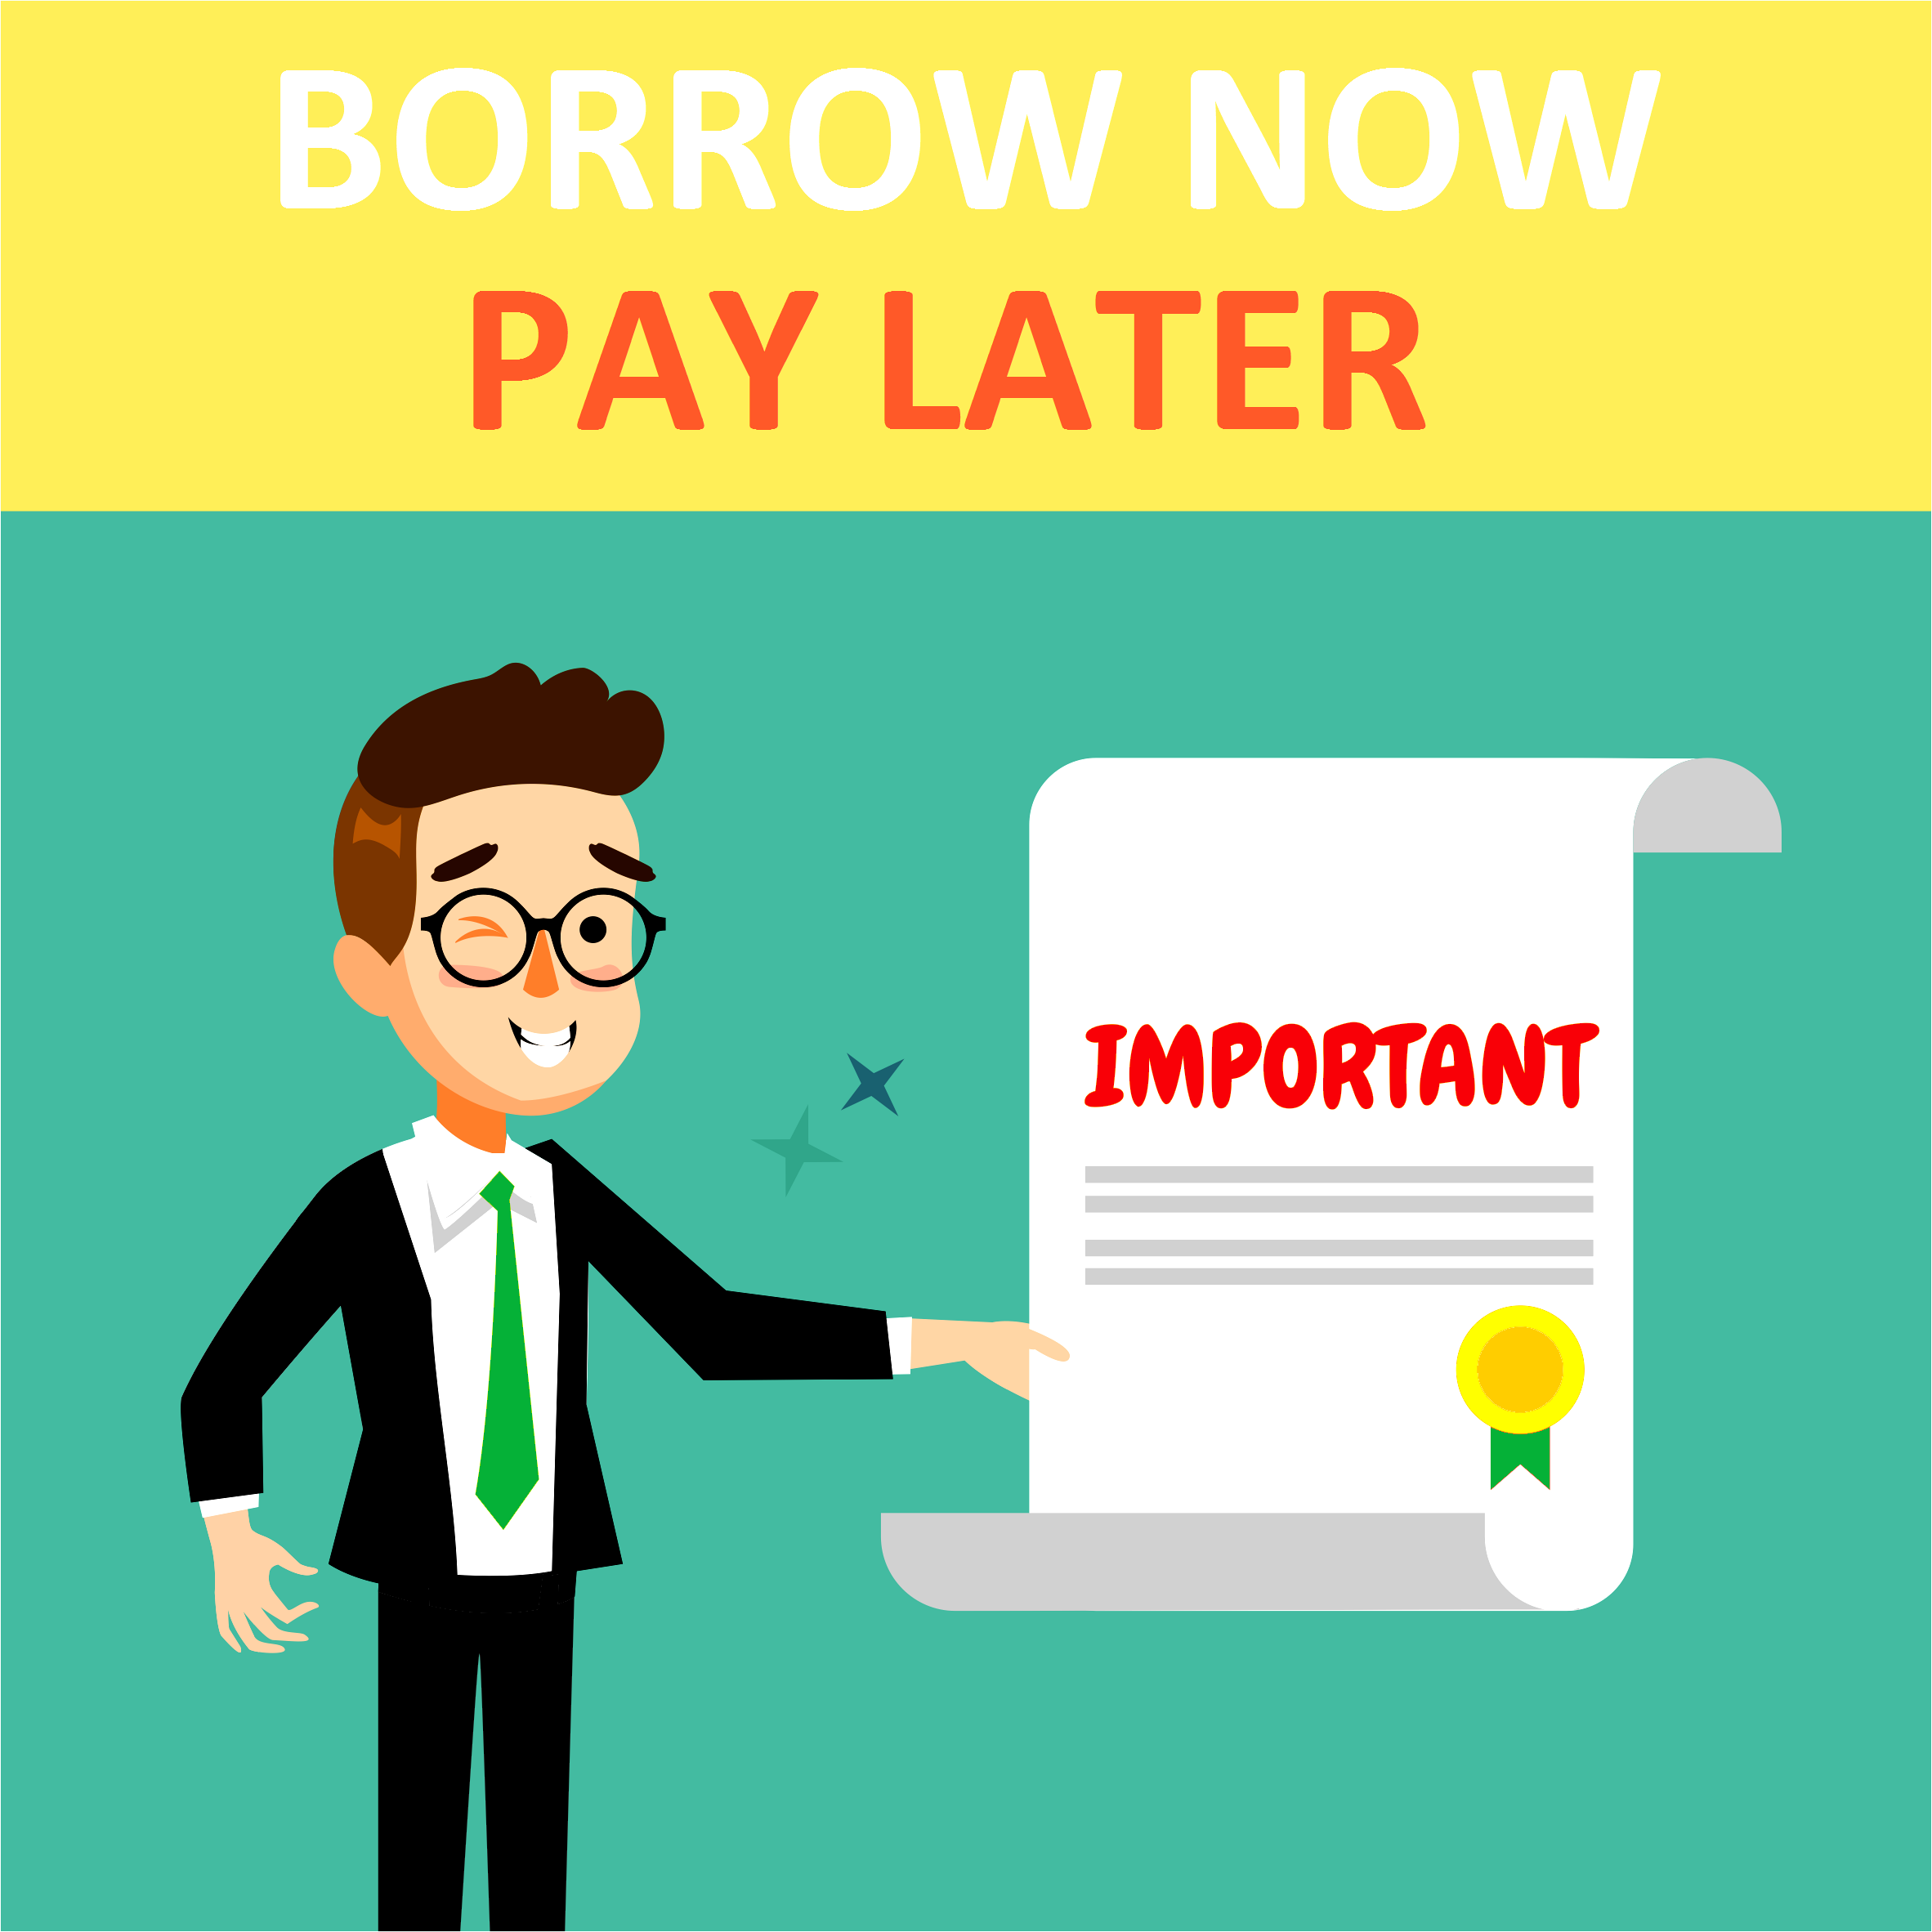 Borrow Now. Pay Later